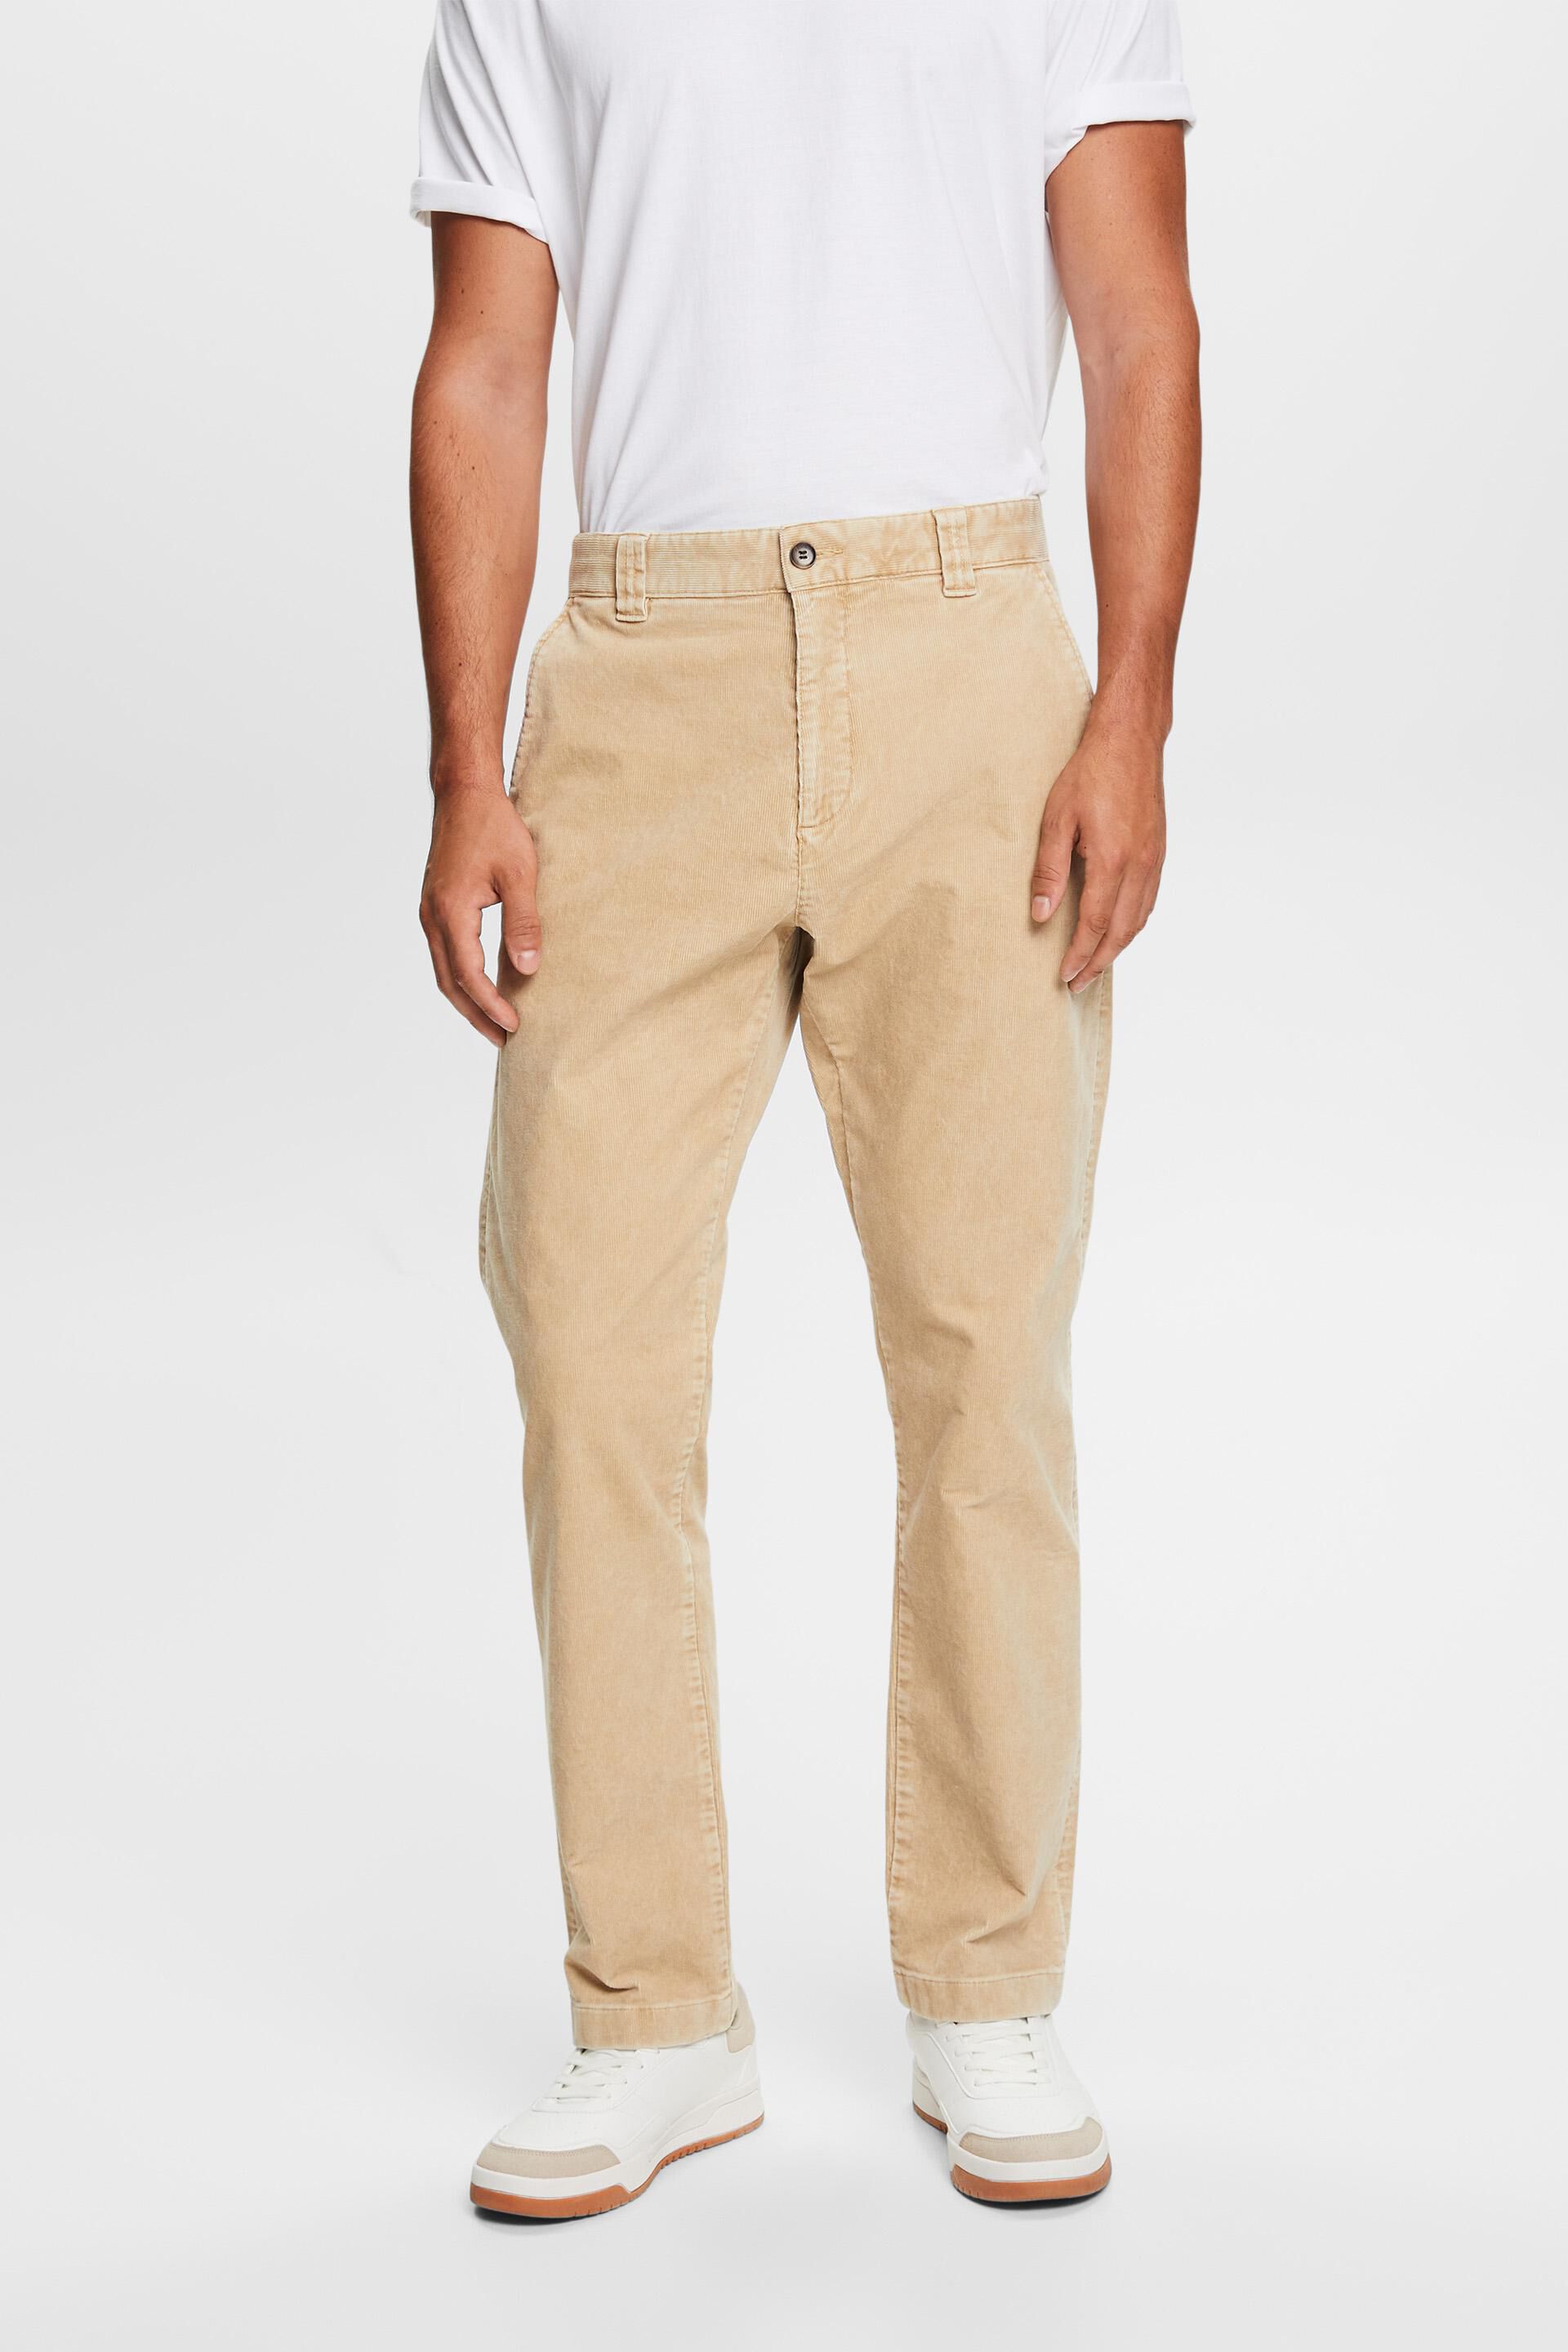 Slim Fit Corduroy trousers - Brown - Kids | H&M IN